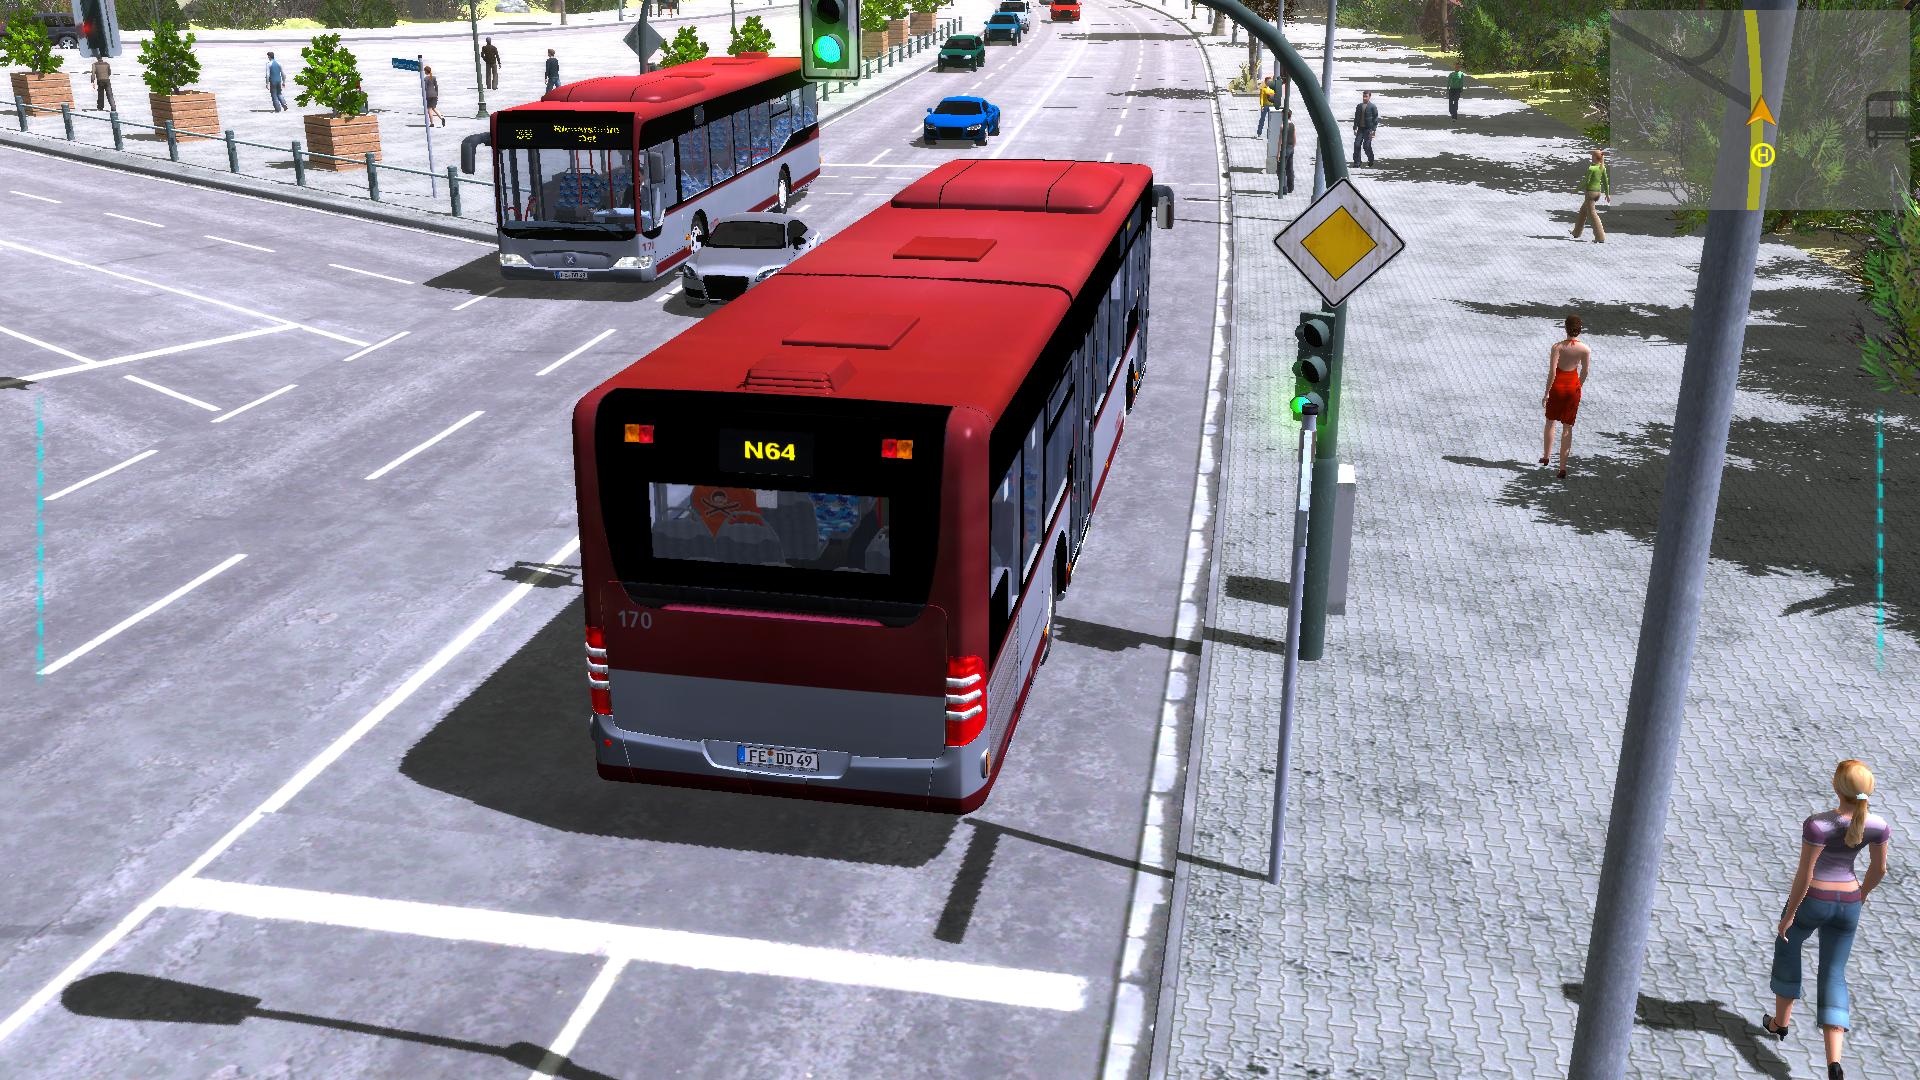 game simulator bus pc